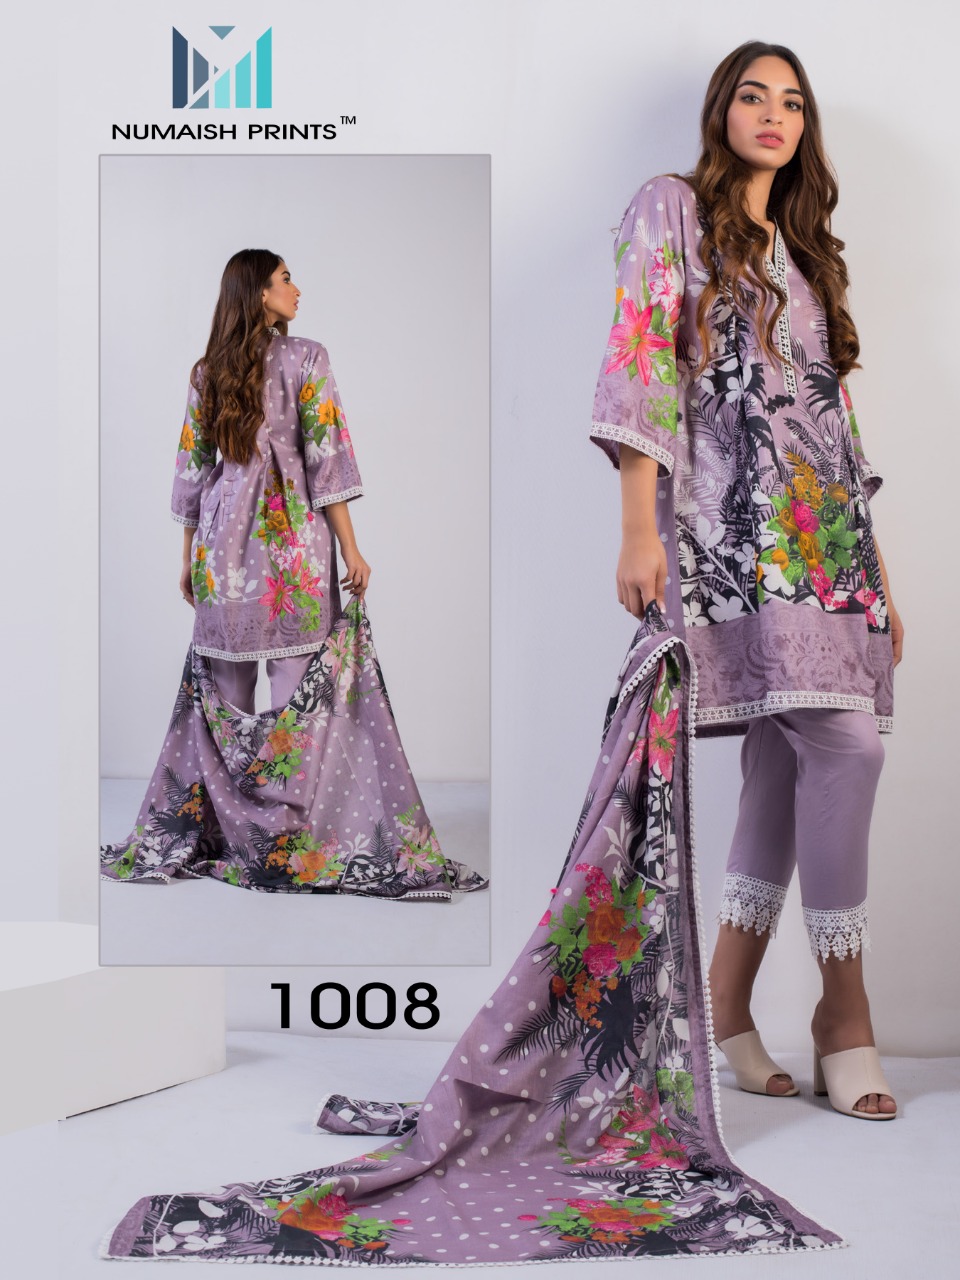 numaish prints mishaal primum printed lawn cotton collection   salwar suit catalog